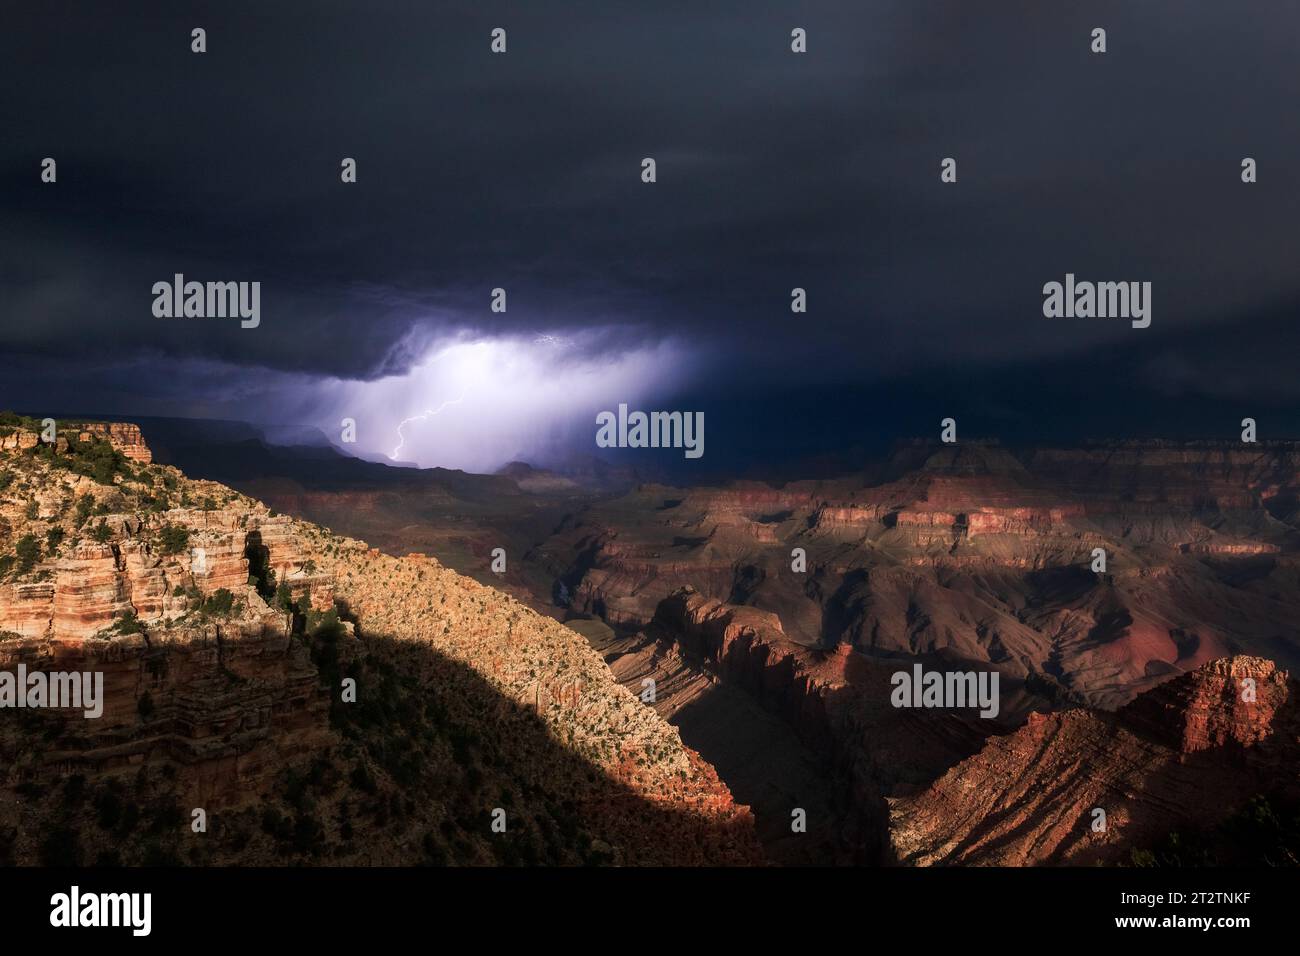 Das dramatische Mondlicht beleuchtet den Grand Canyon, wenn sich ein Gewitter nähert Stockfoto